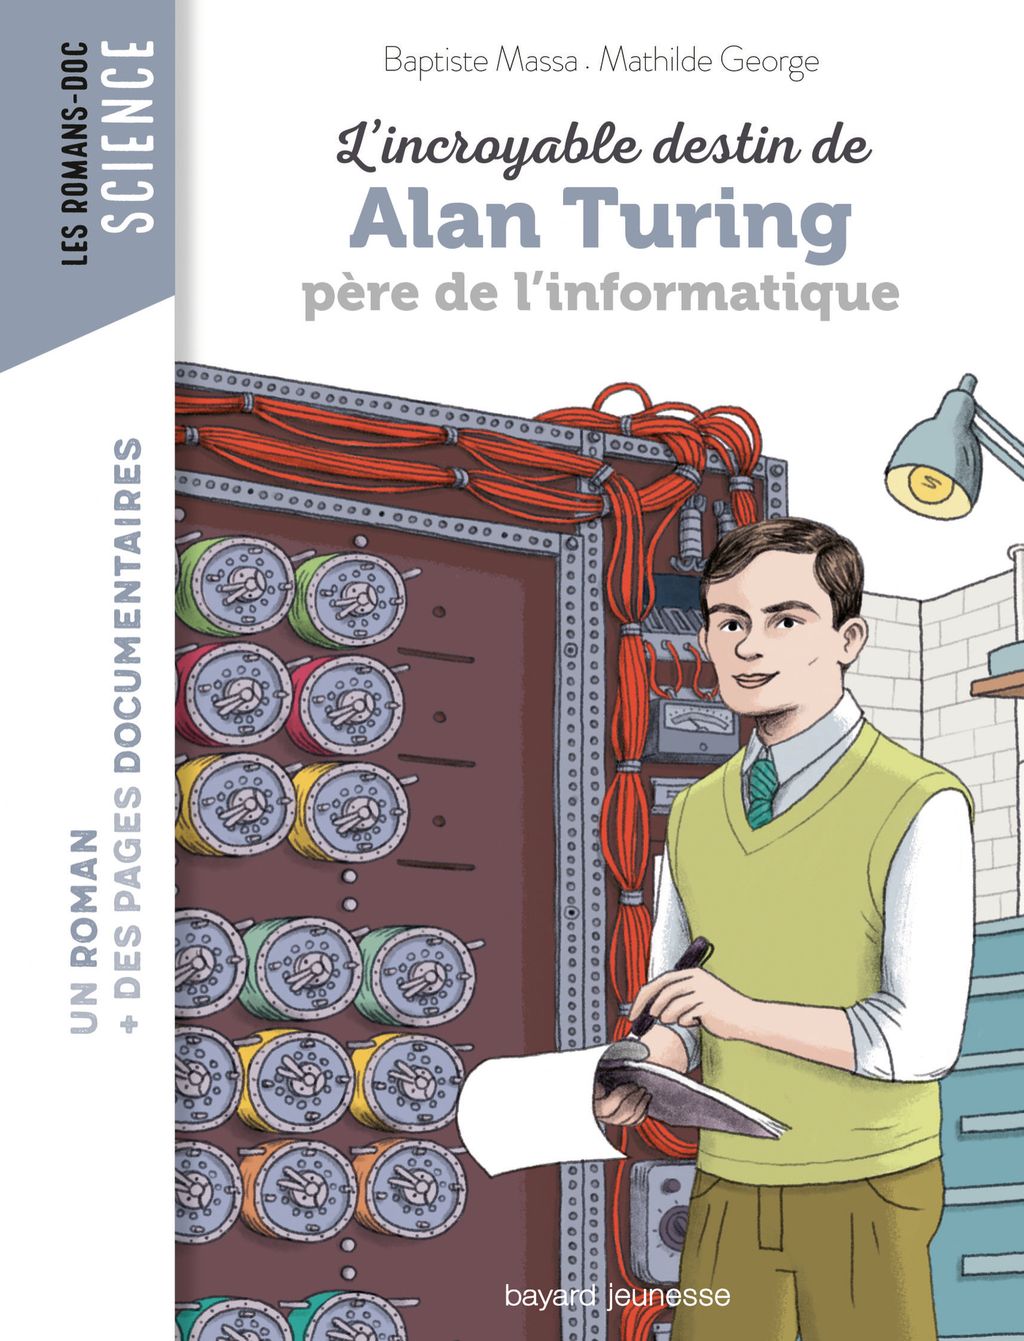 Couverture de « L’incroyable destin d’Alan Turing, père de l’informatique »